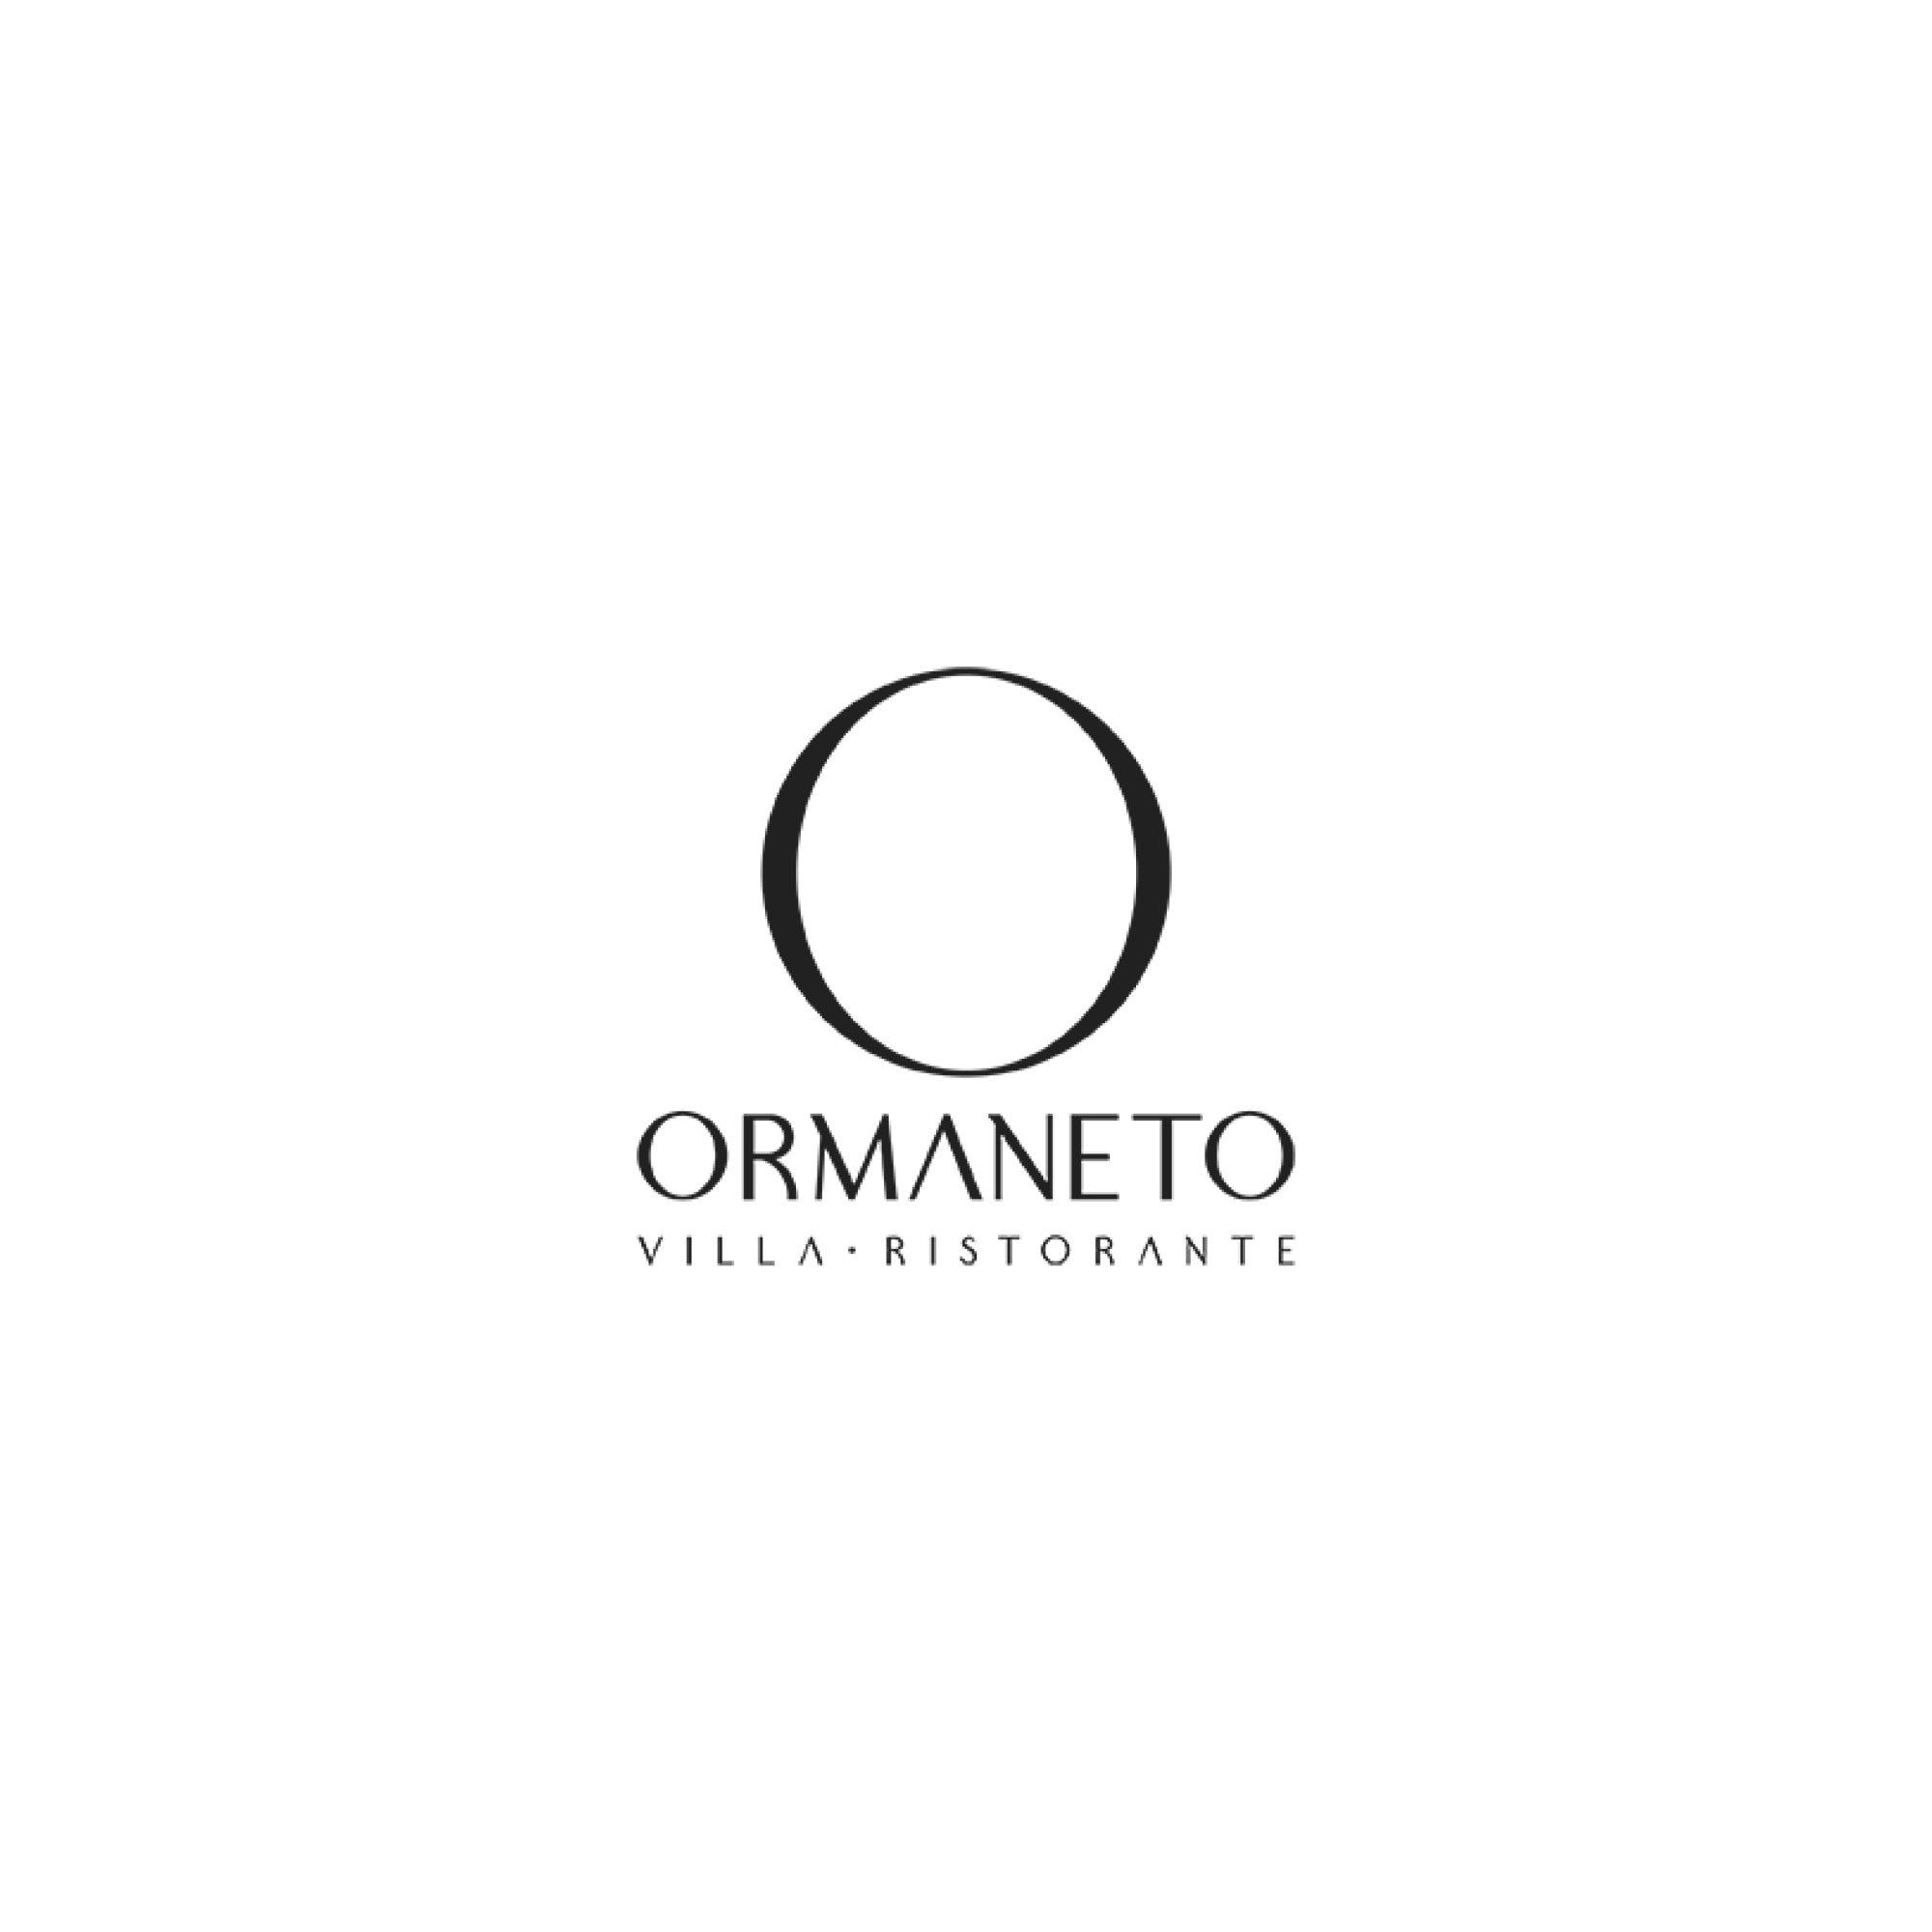 Vila Ormaneto